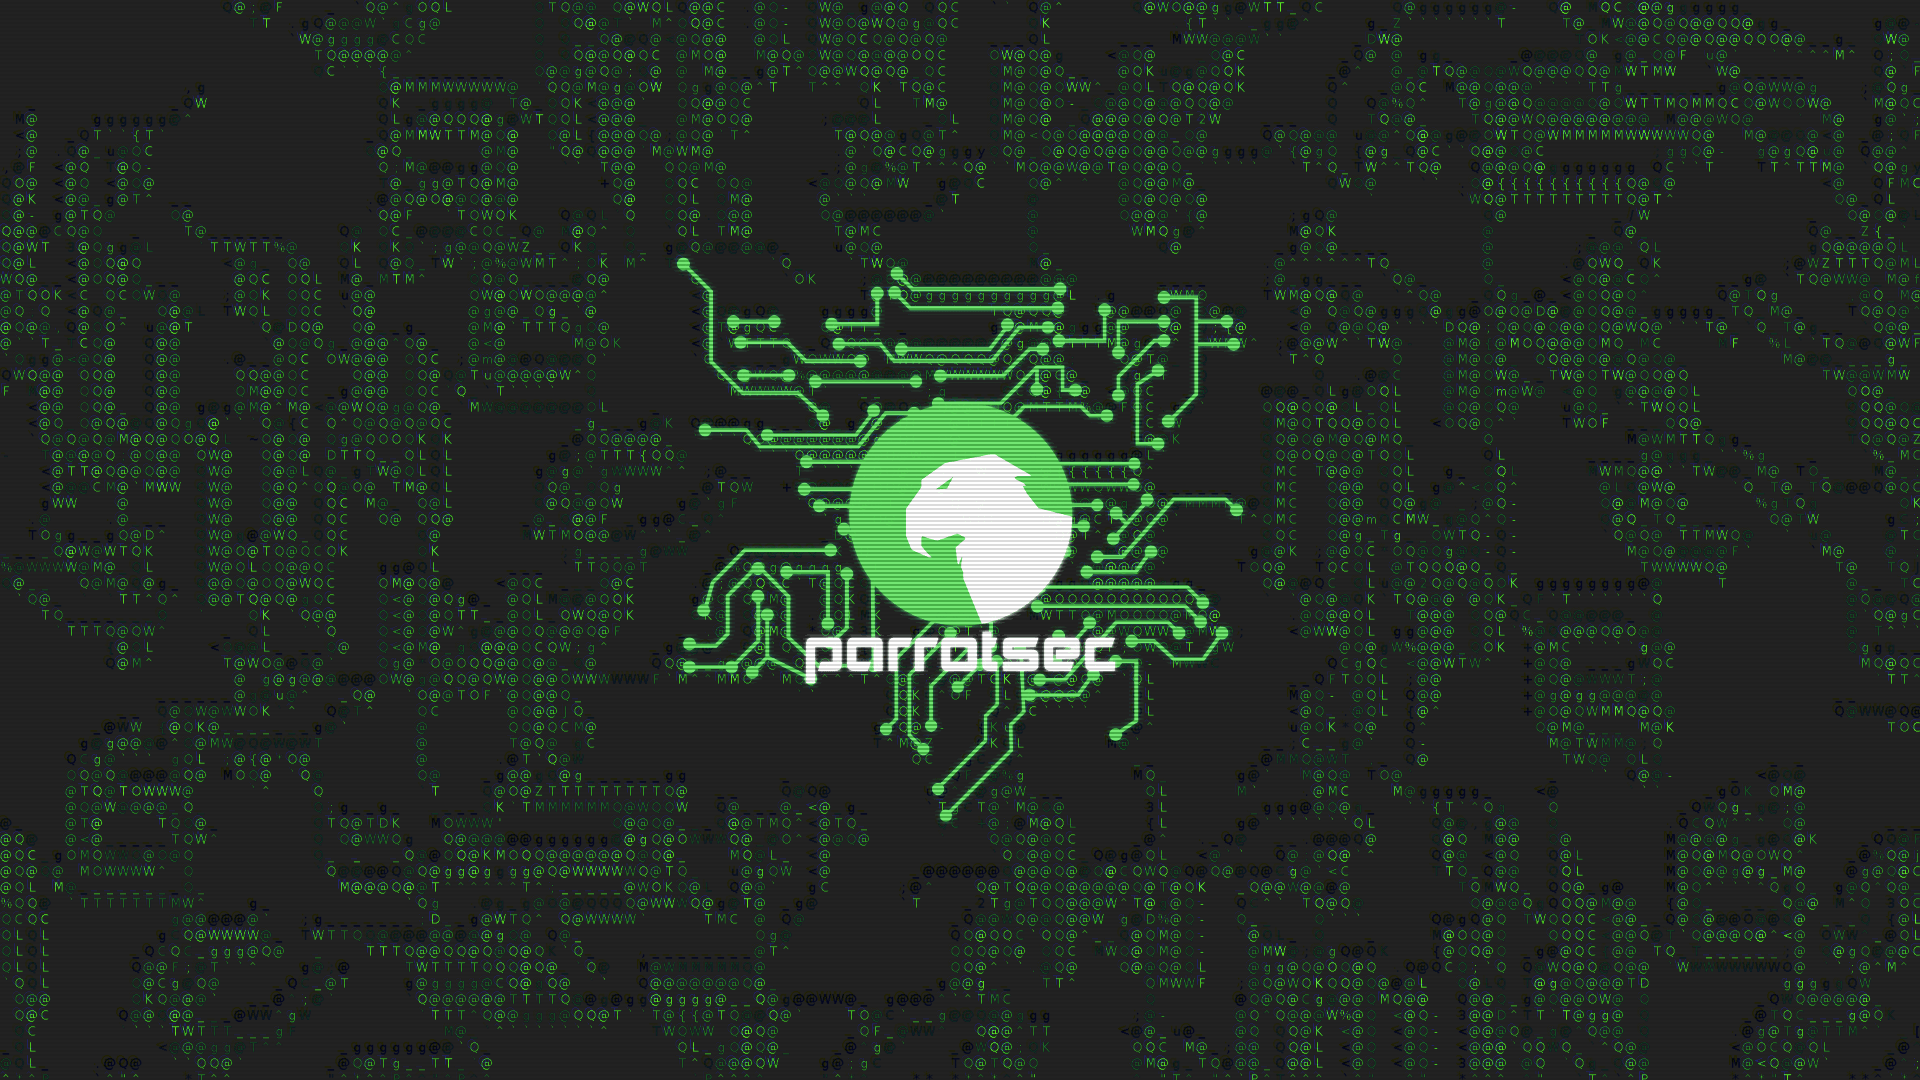 ParrotSec Logo and Wallpaper